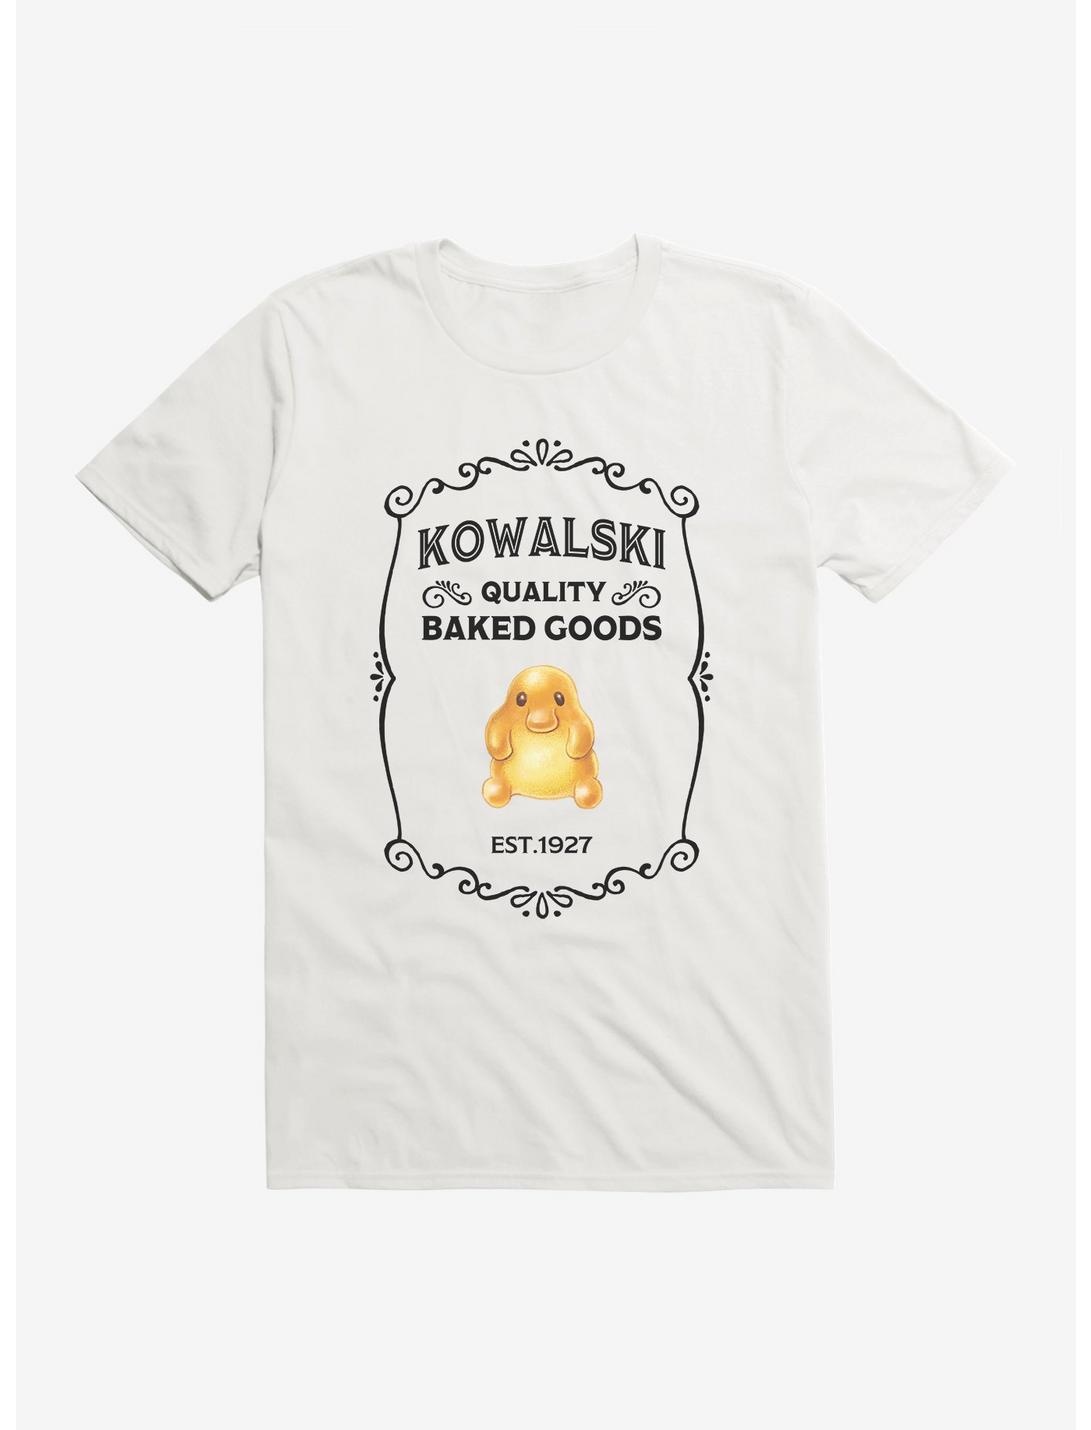 Kowalski Quality Baked Goods Unisex Shirt